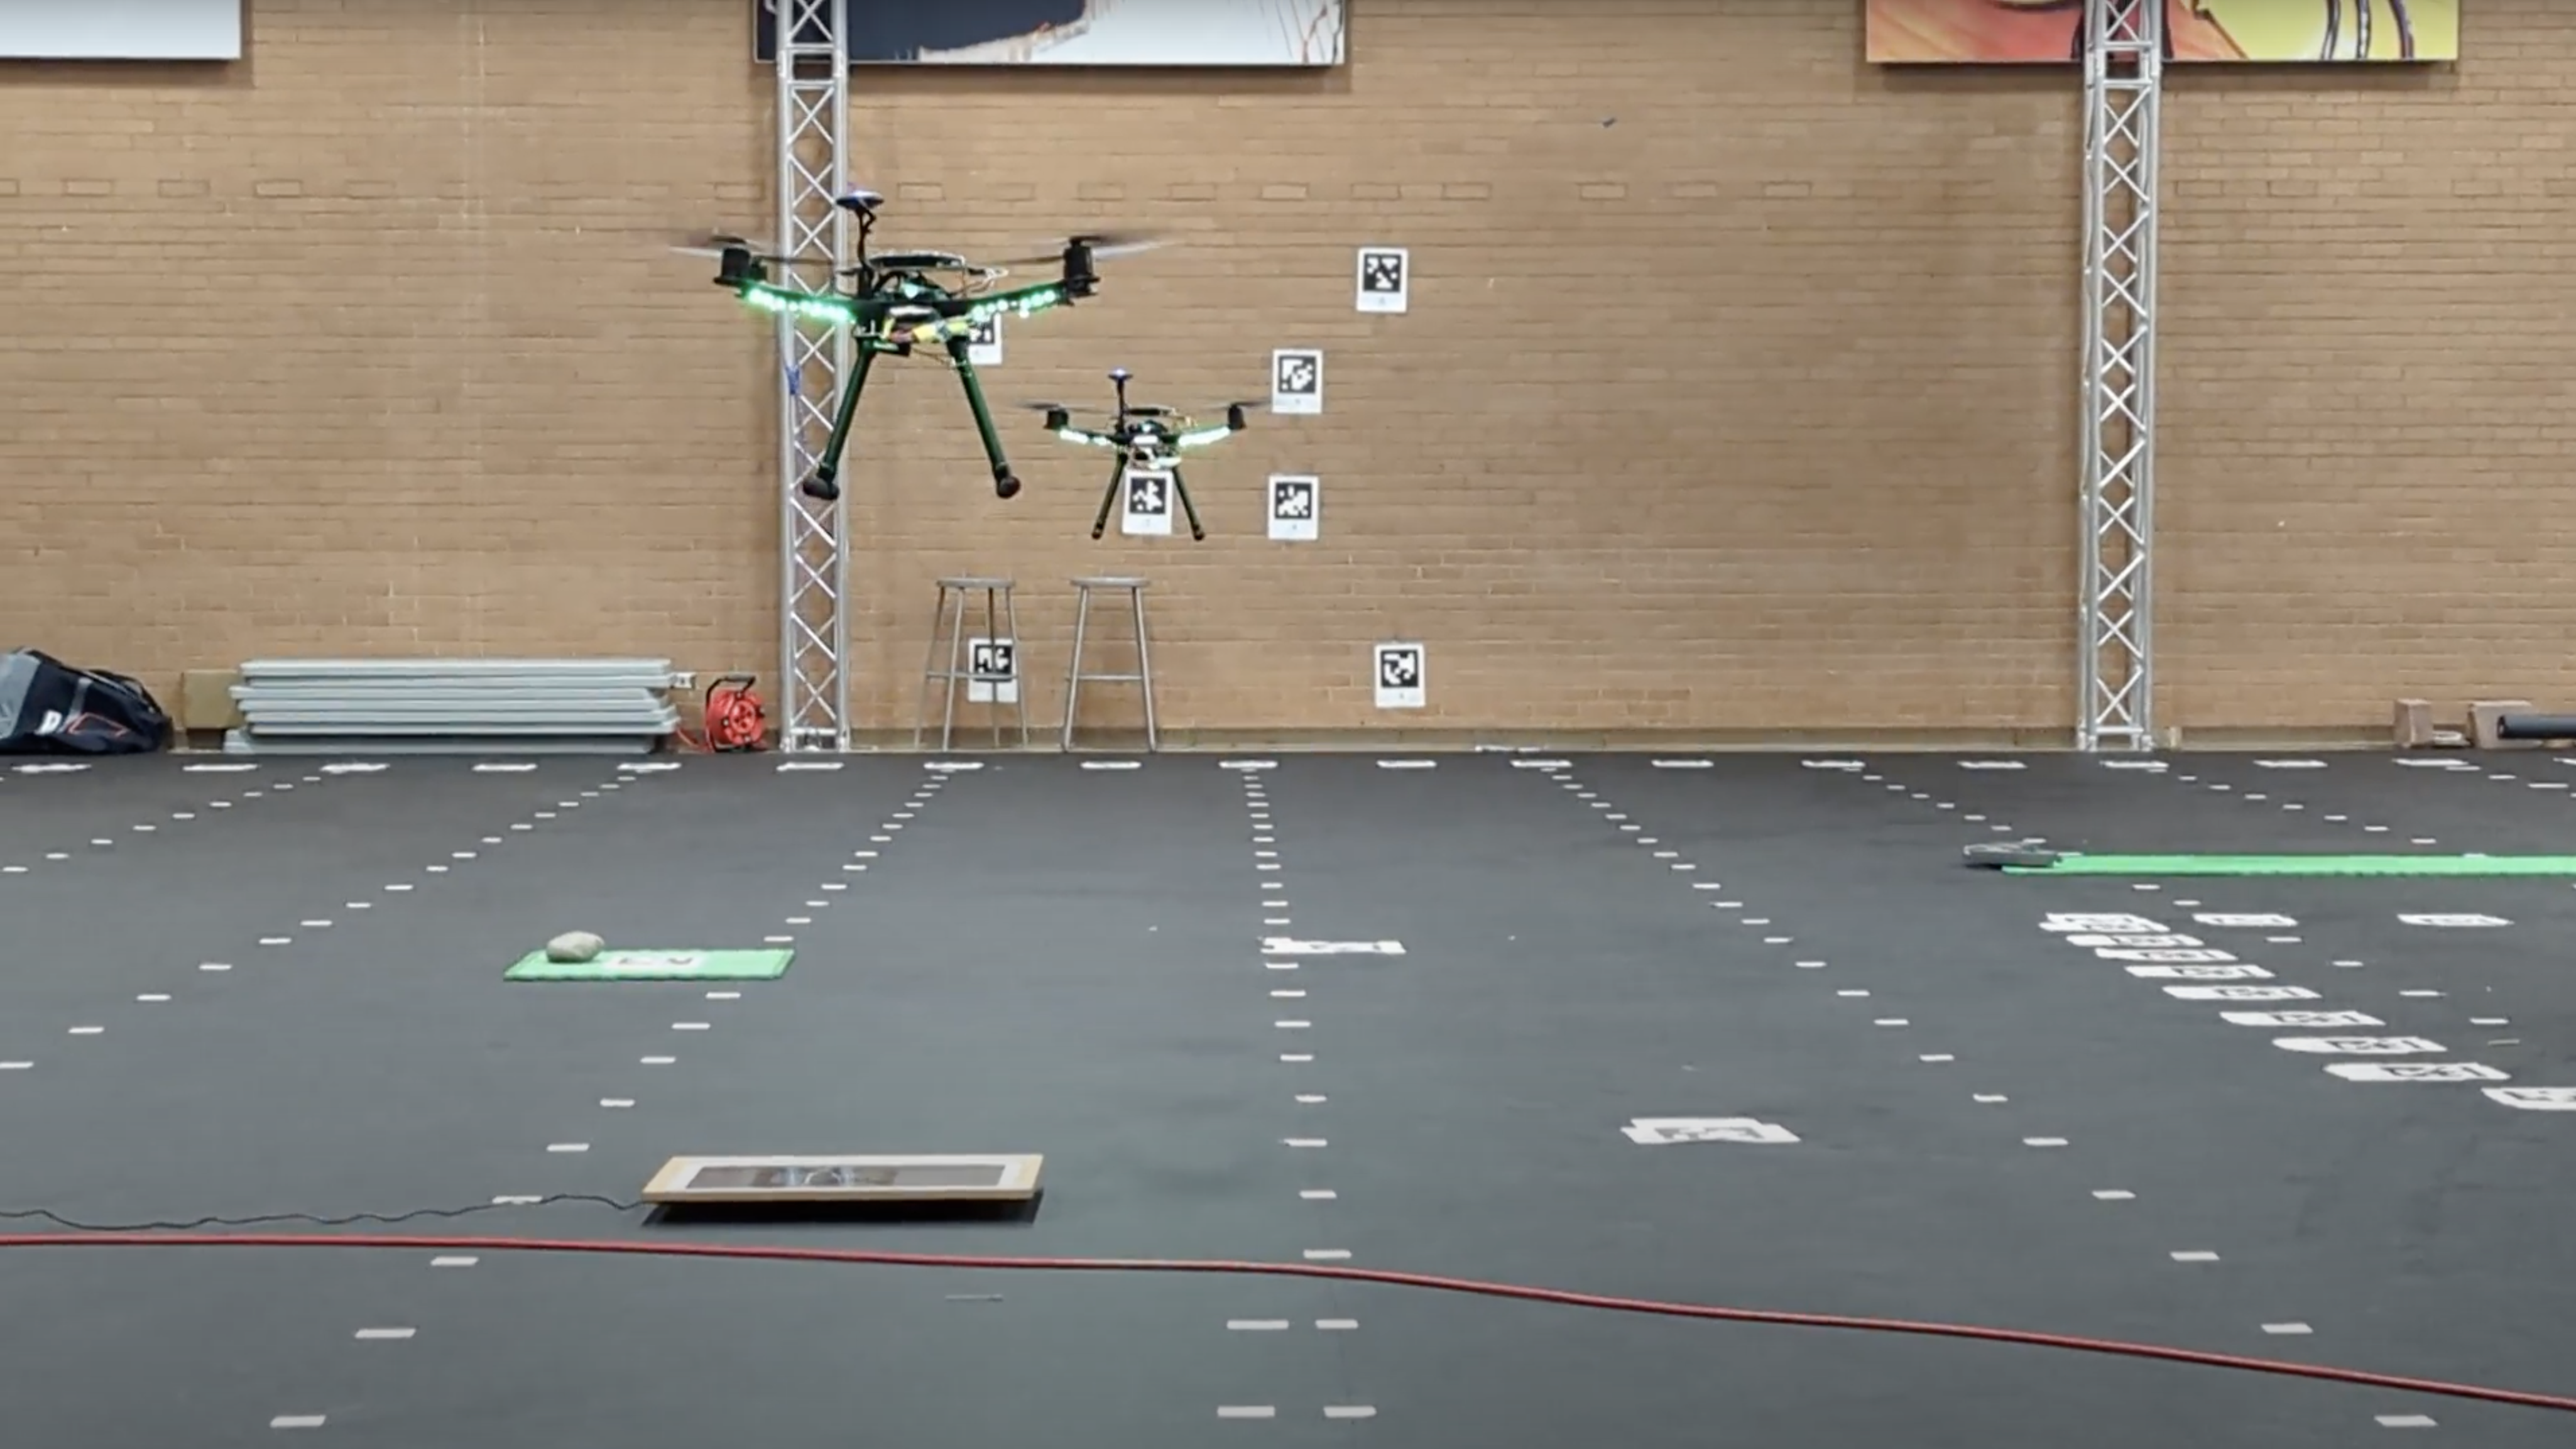 Two Green Drones in Flight Test